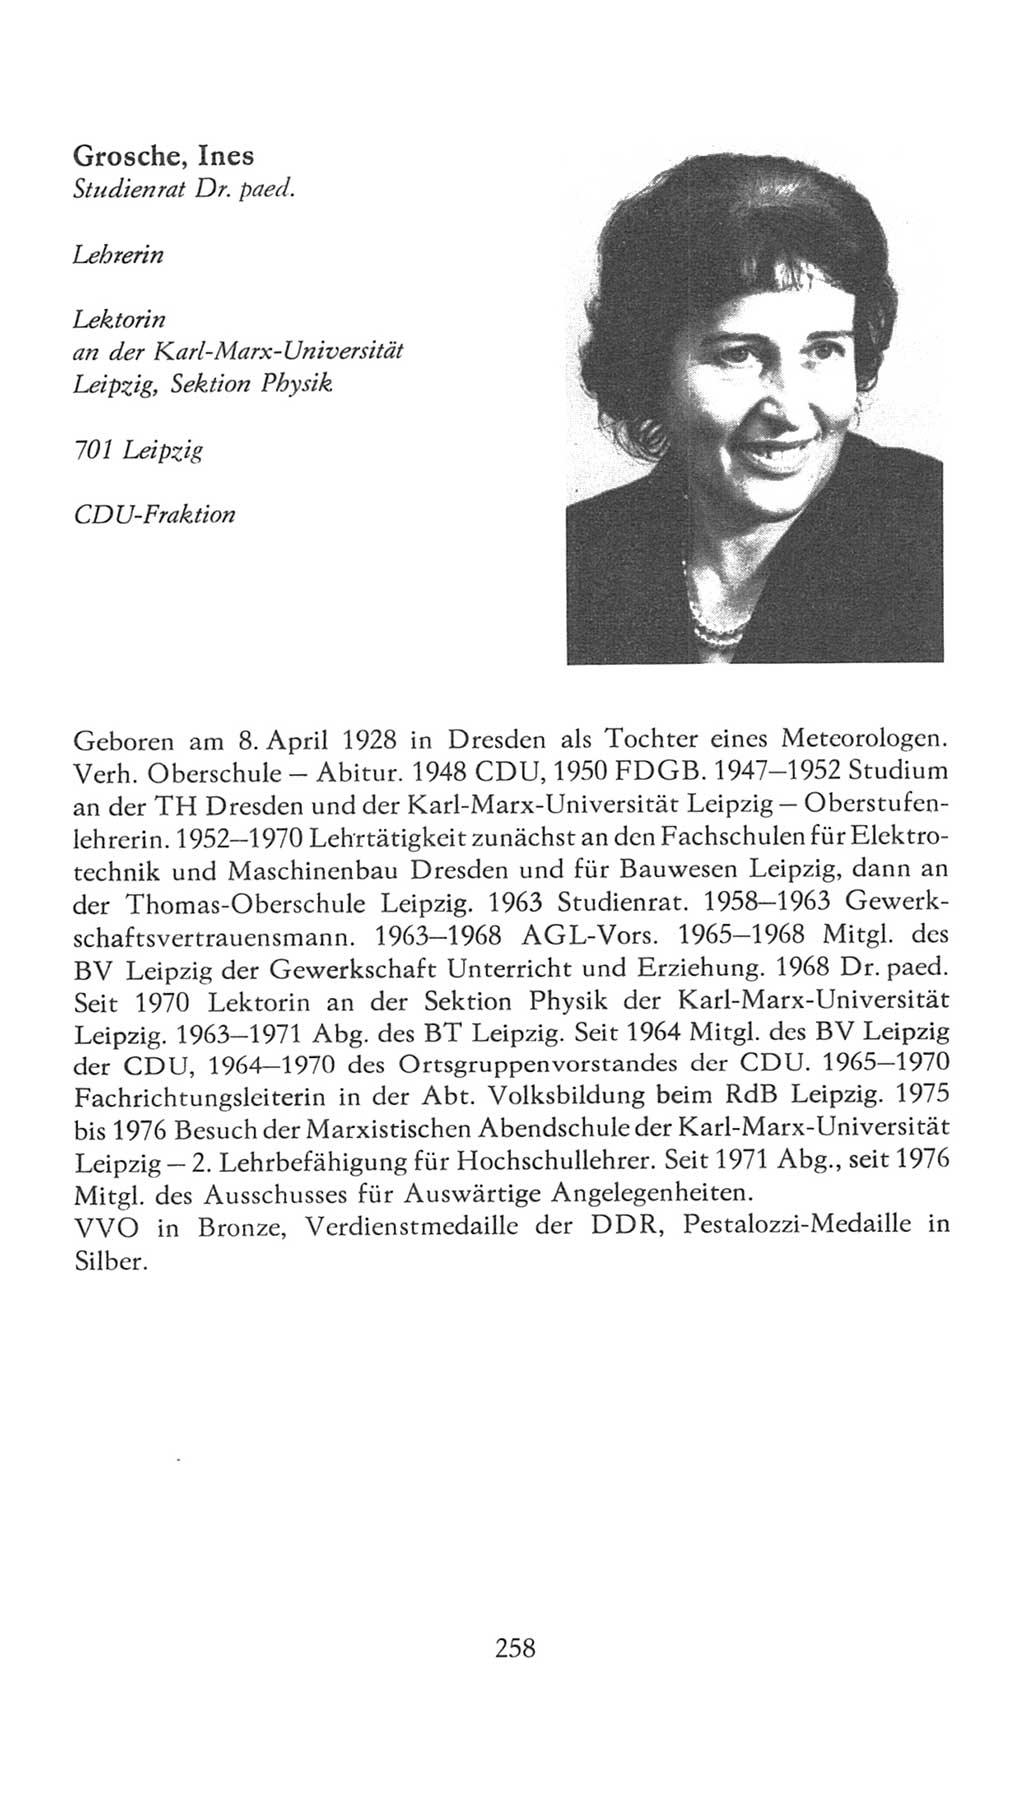 Volkskammer (VK) der Deutschen Demokratischen Republik (DDR), 7. Wahlperiode 1976-1981, Seite 258 (VK. DDR 7. WP. 1976-1981, S. 258)